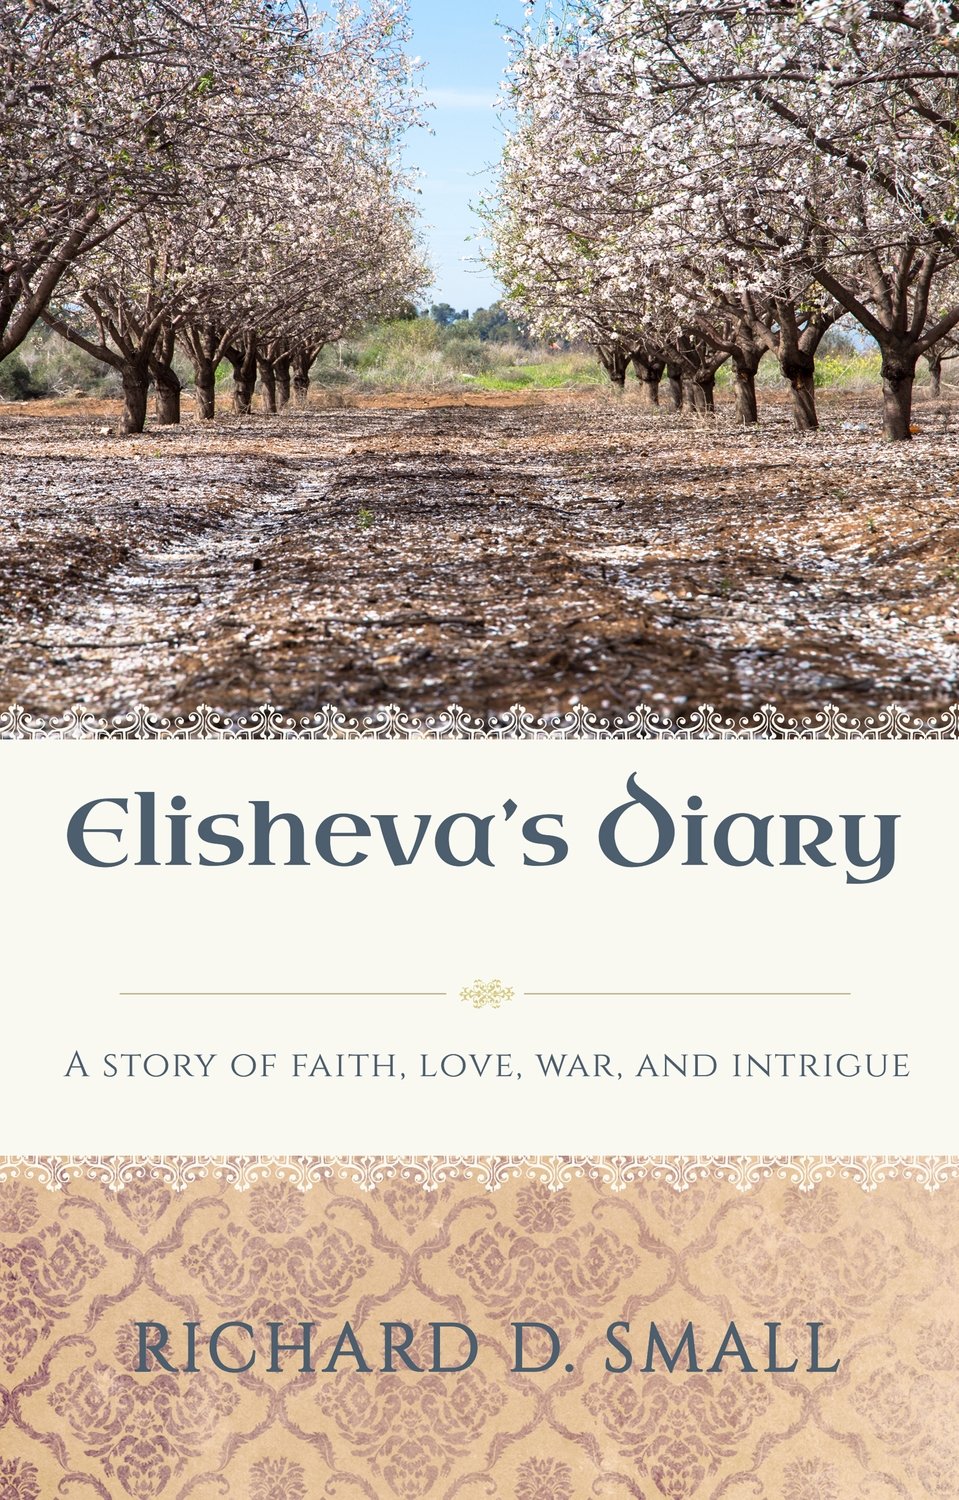 Elisheva's Diary